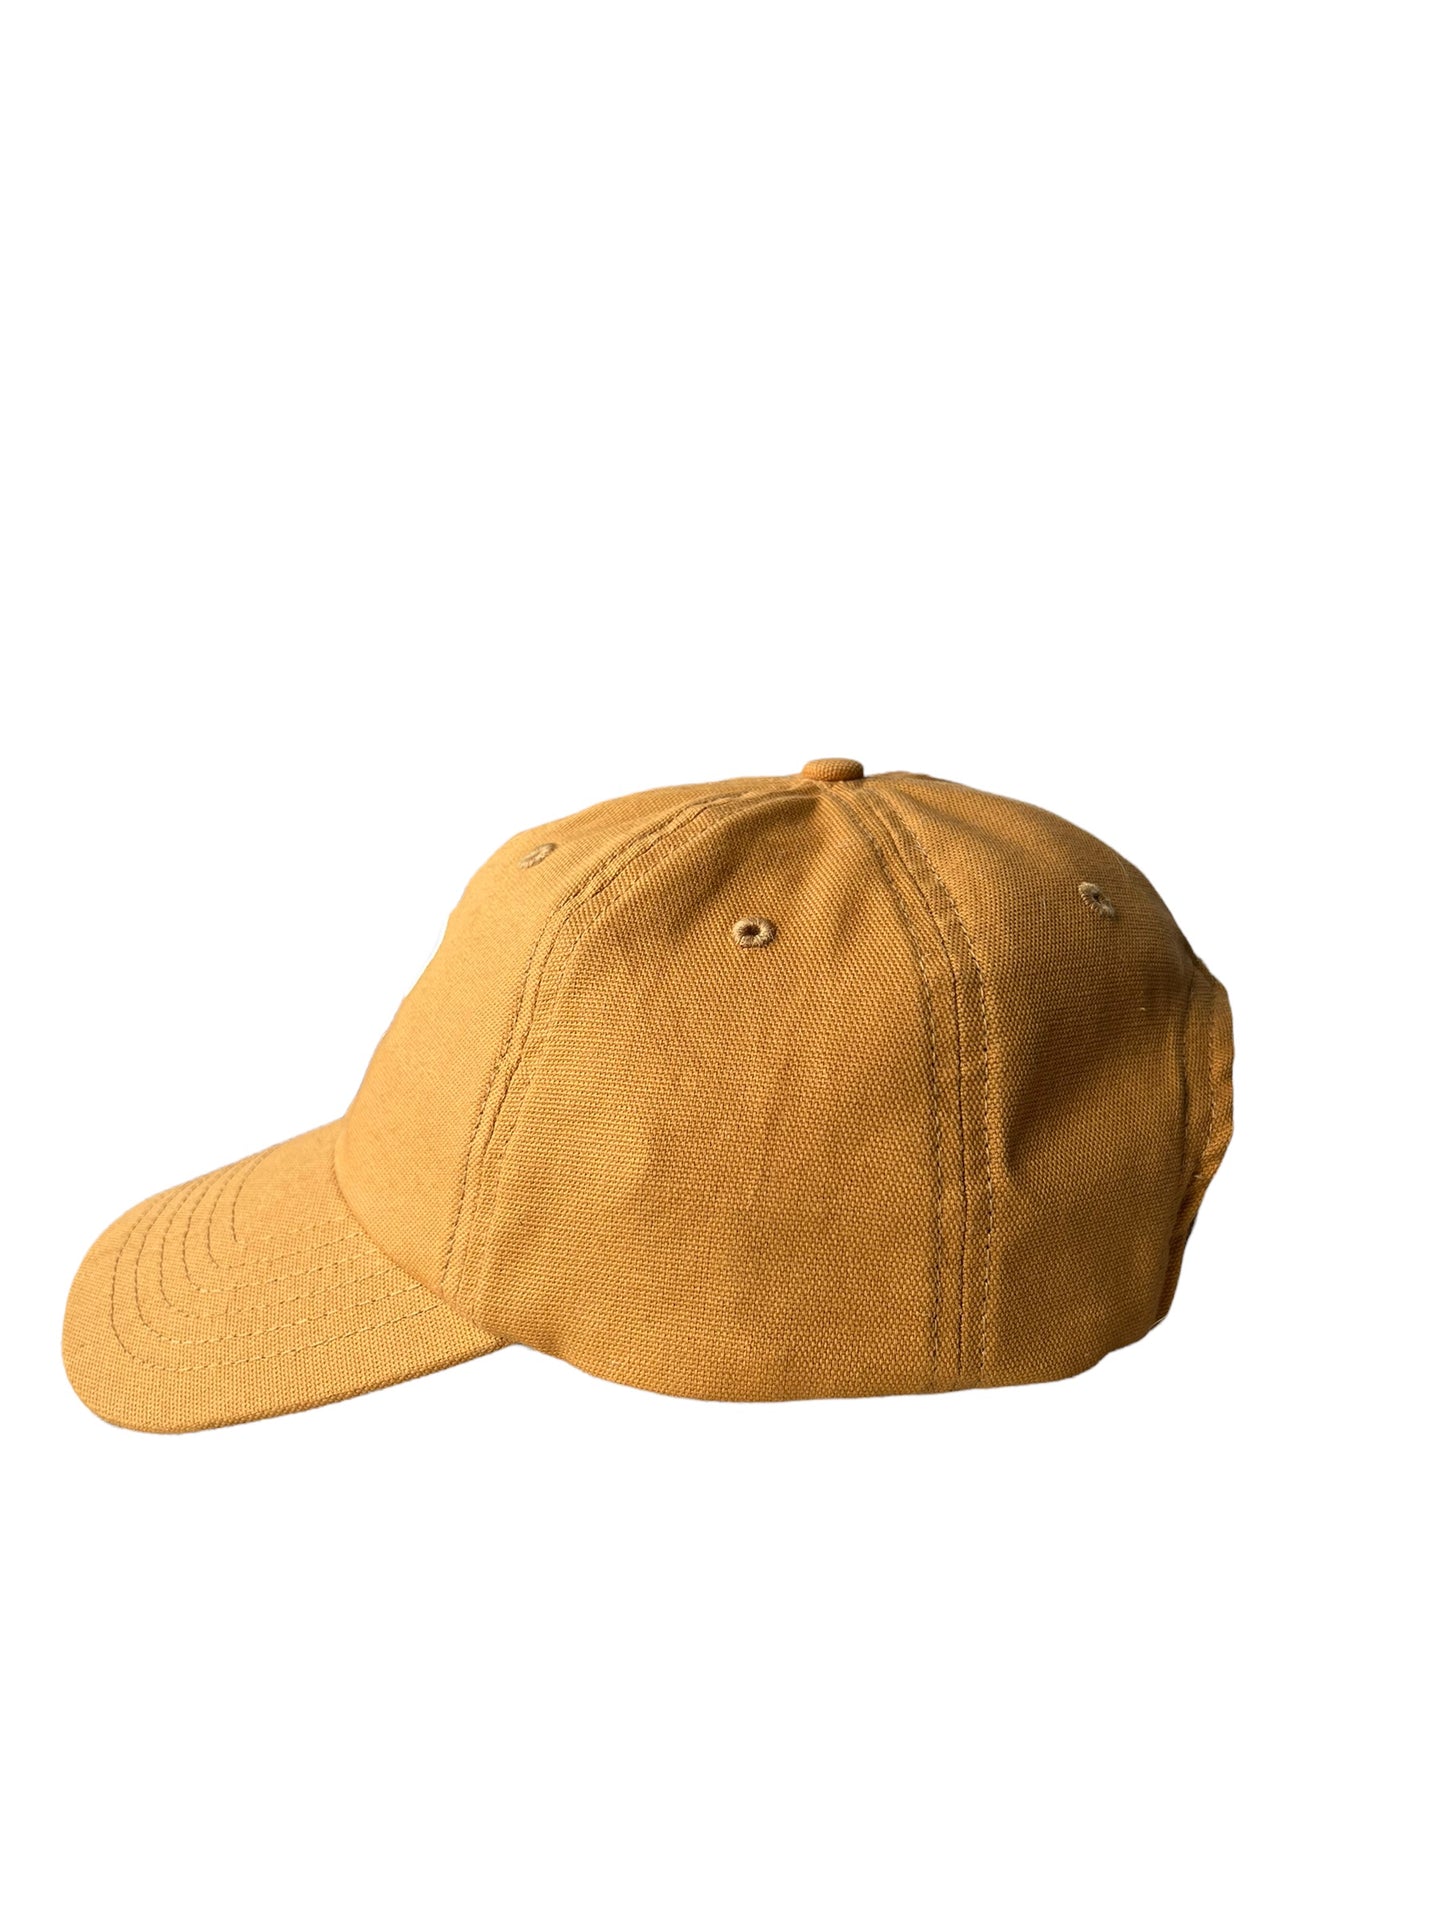 Mustard JP Jack Proper Dad Hat